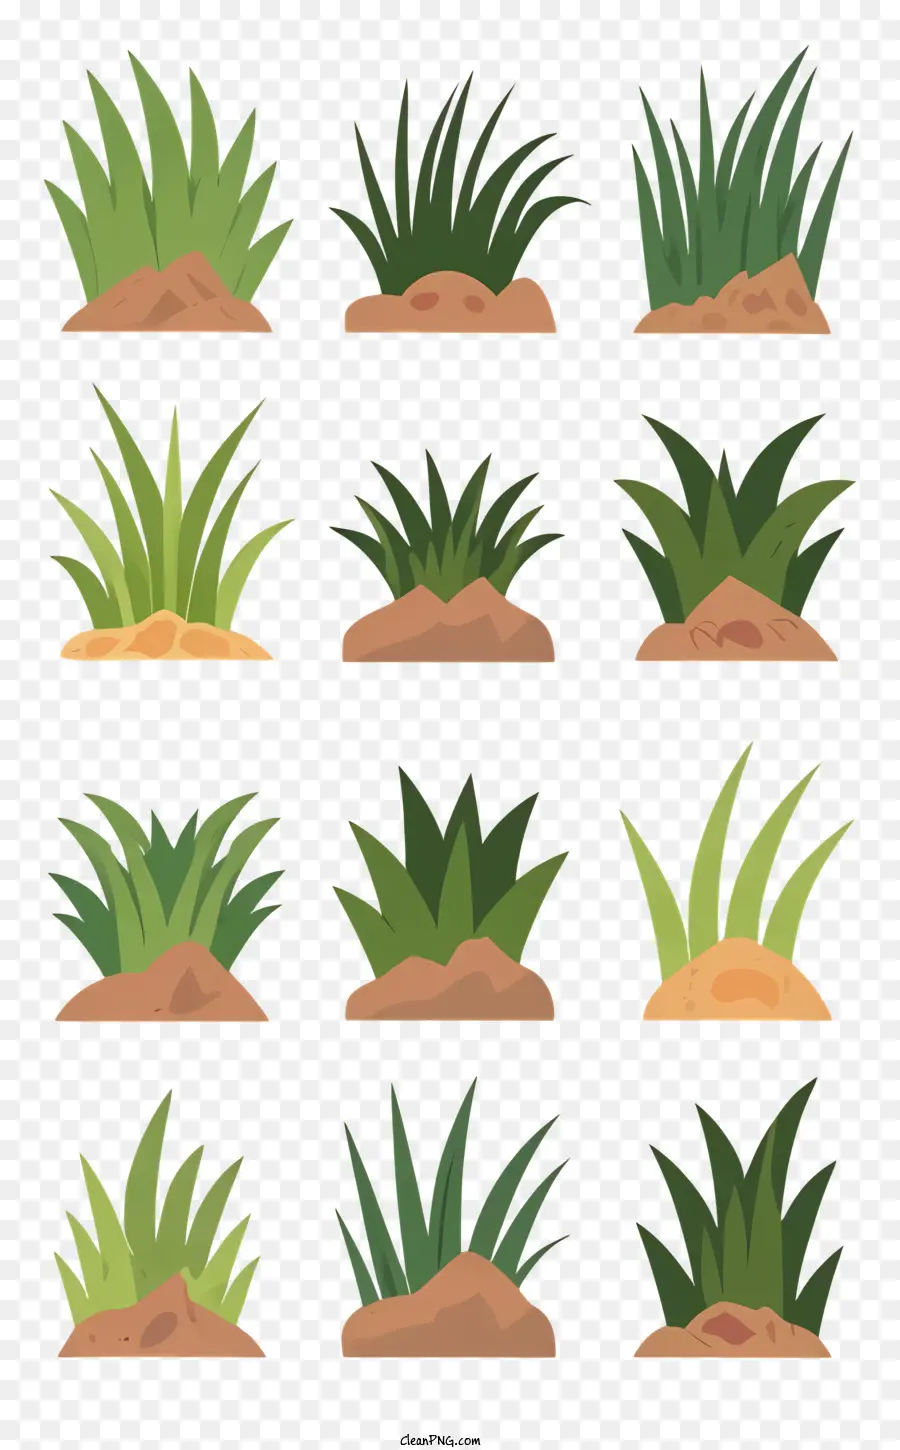 Piante di erba Organizzazione artistica naturalistica - Immagine artistica di vari tipi di erba e piante